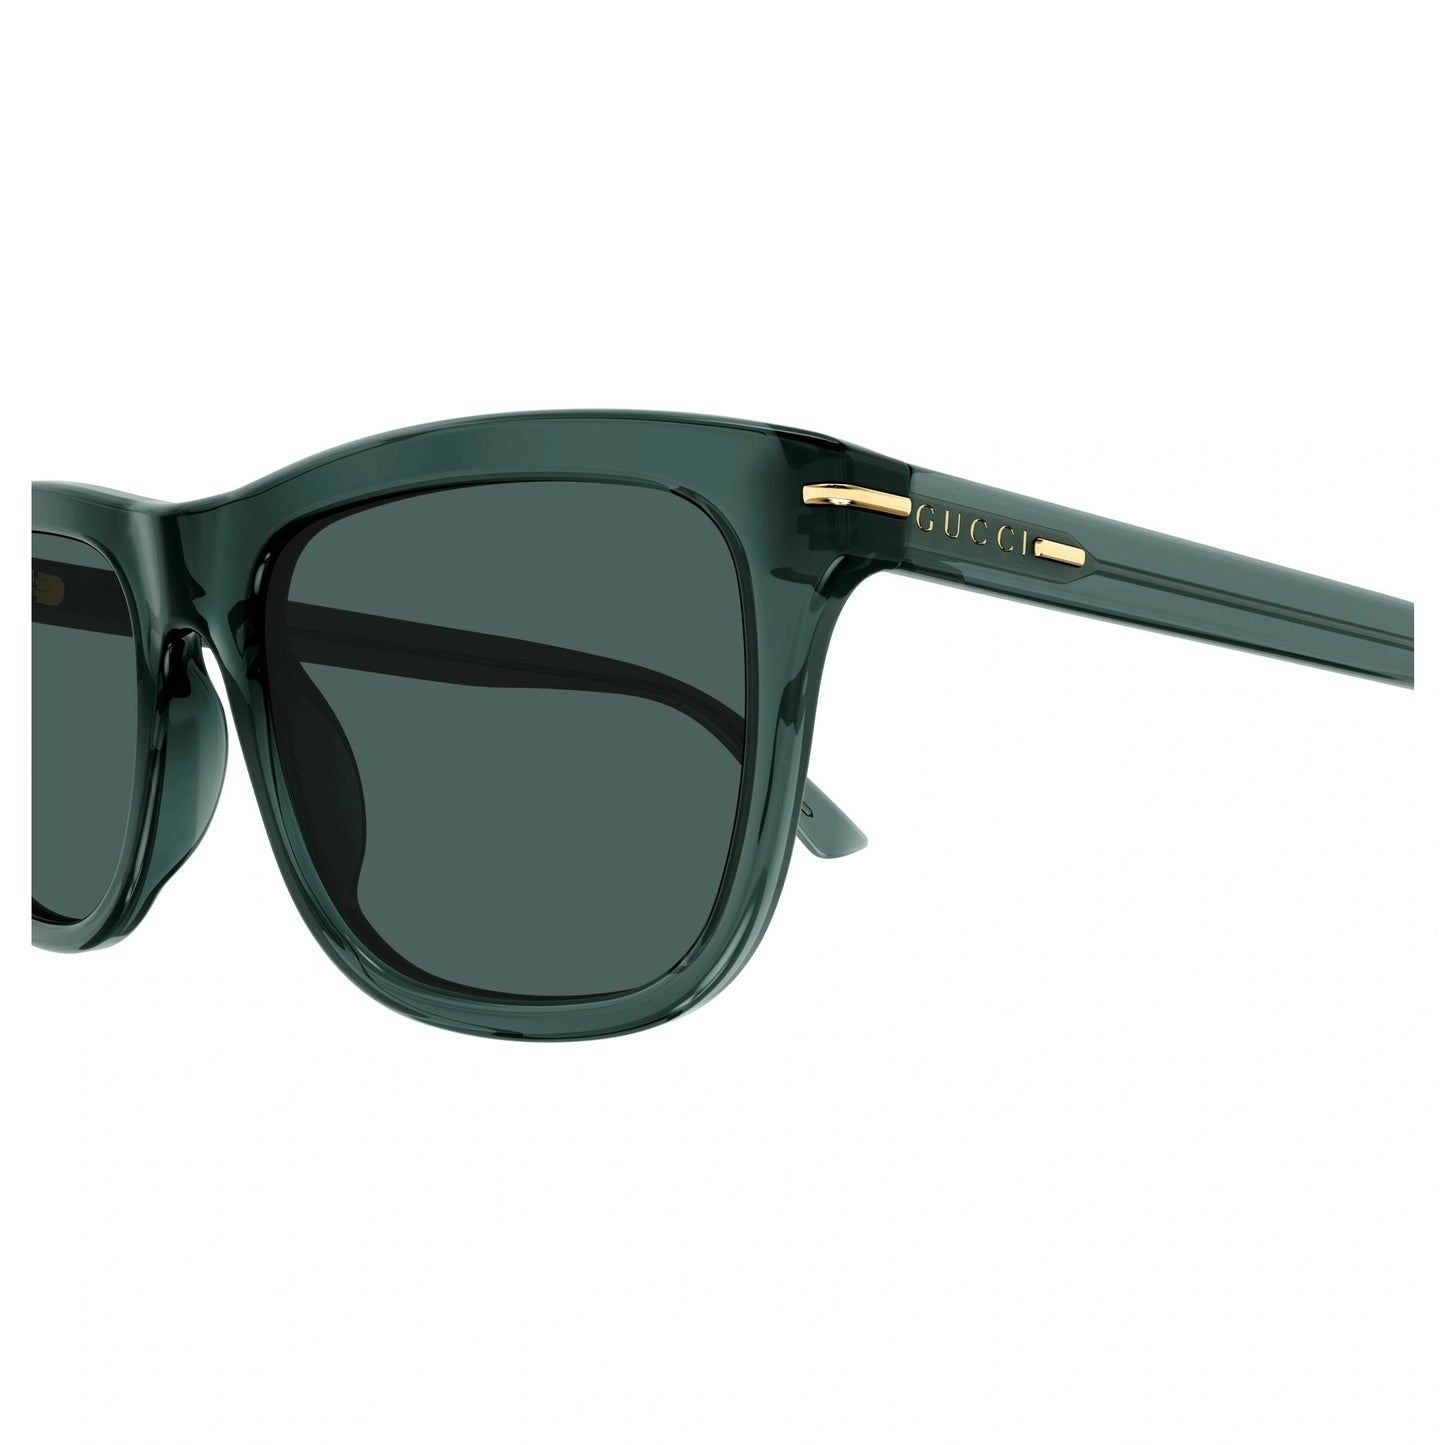 Gucci GG1444S-004 55mm New Sunglasses